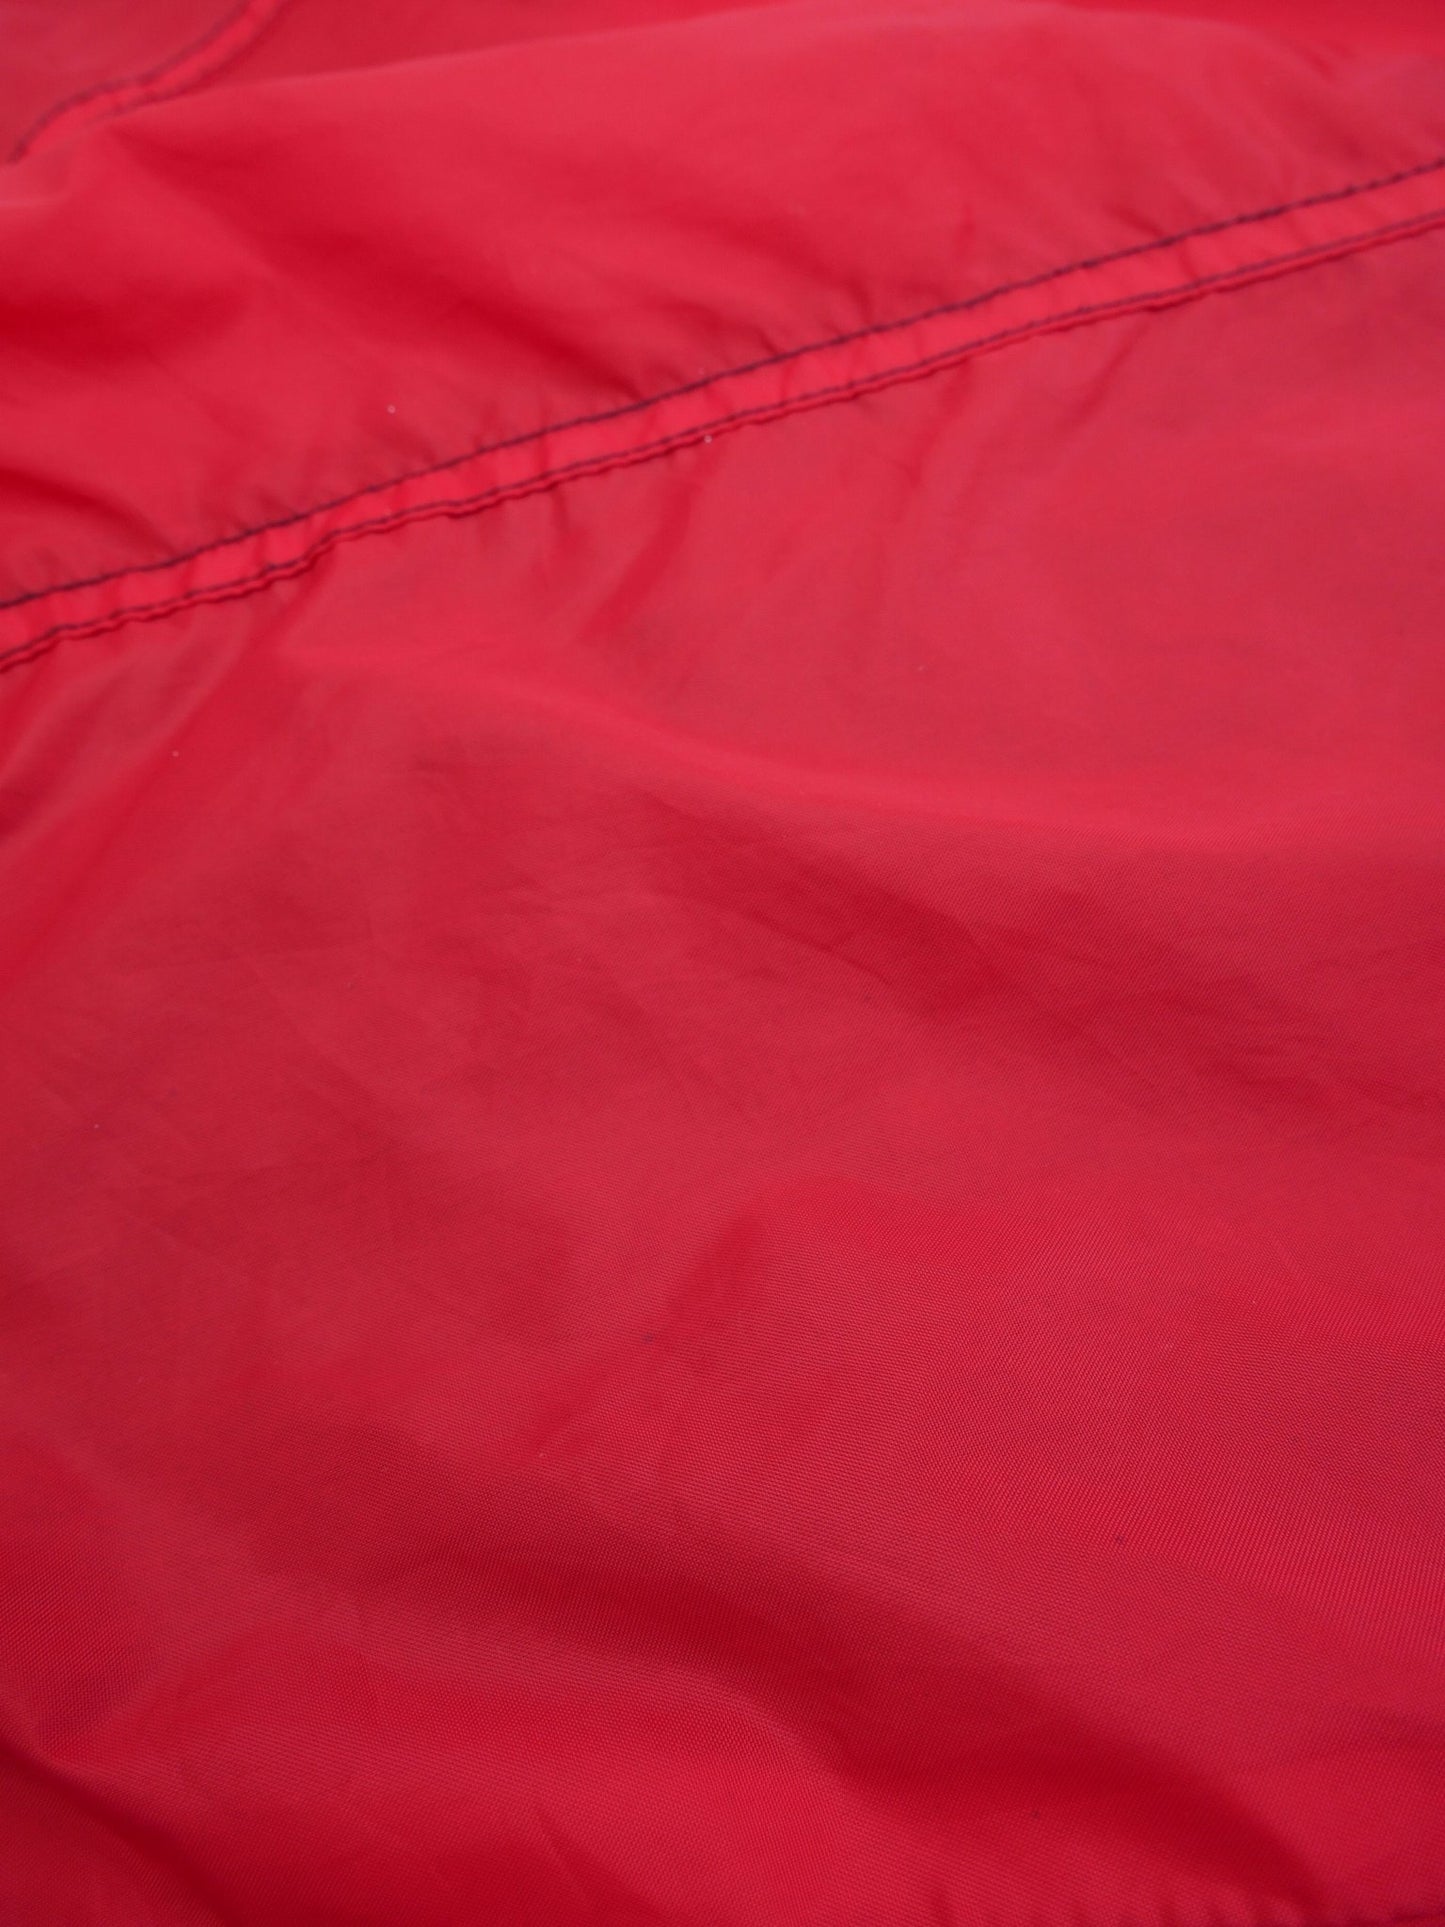 puma printed Logo 'FC Köln' red Track Jacket - Peeces